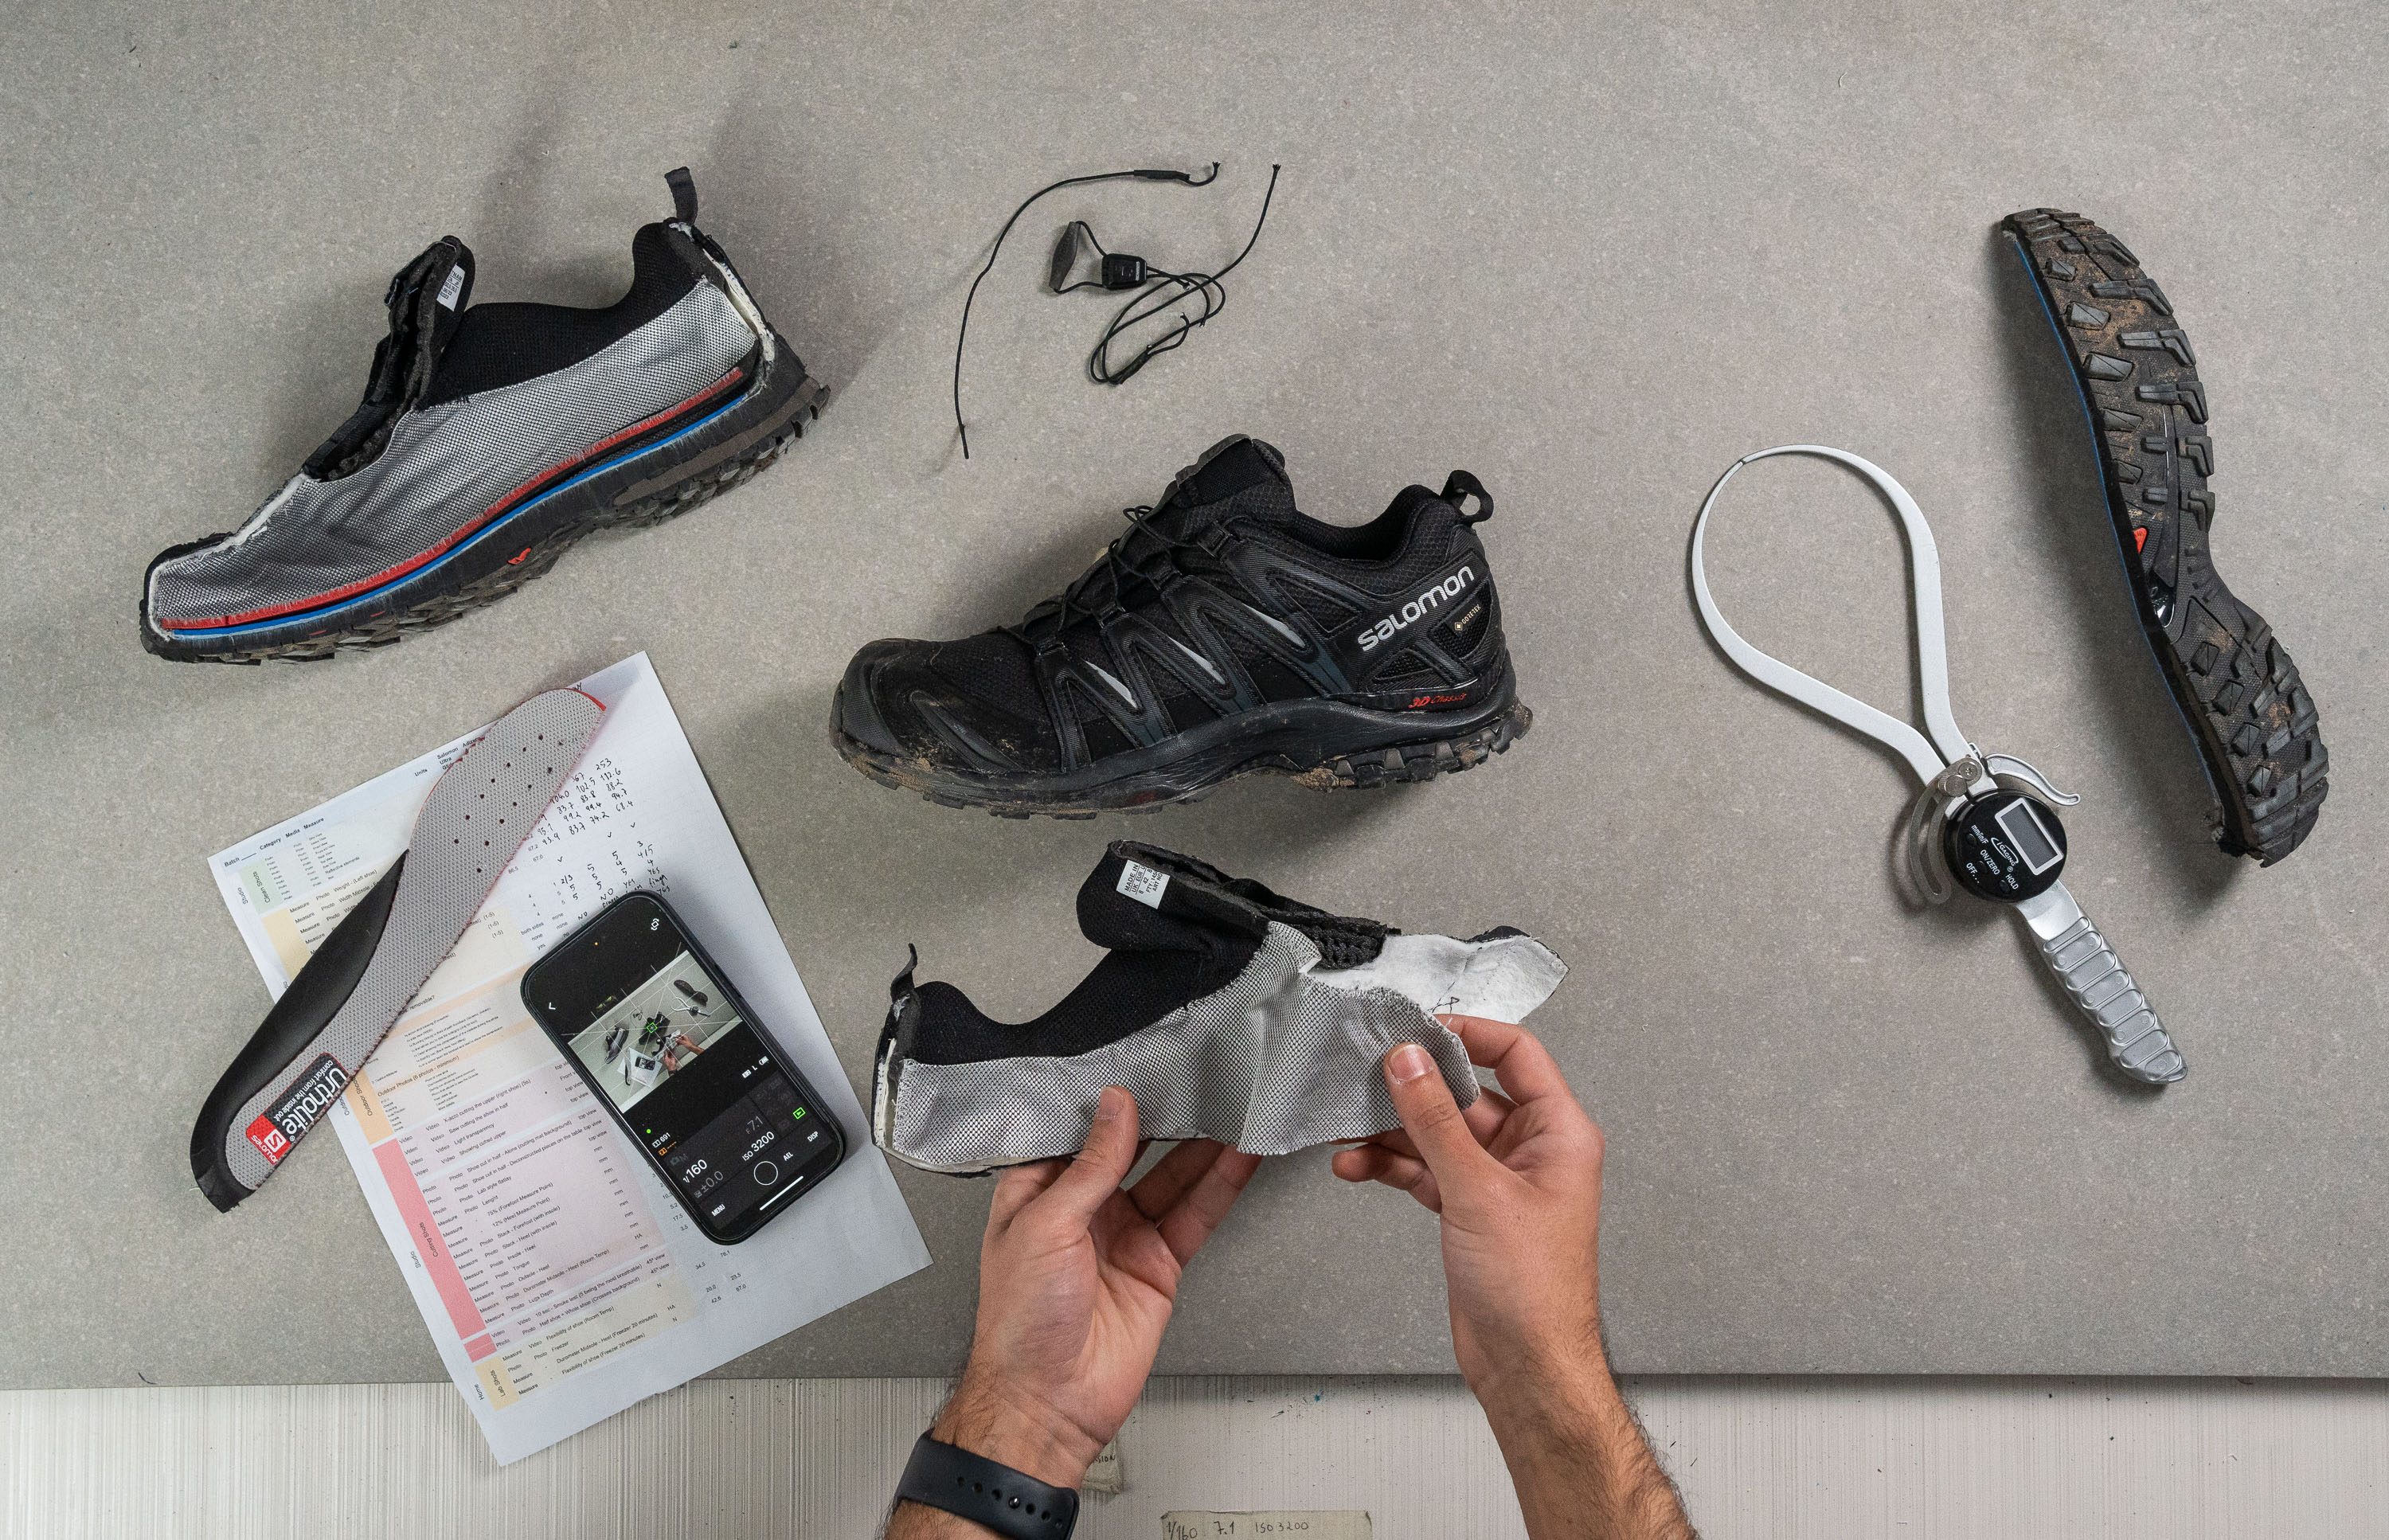 Salomon Xa Pro 3d V8 Gore-tex negro zapatillas trail running mujer